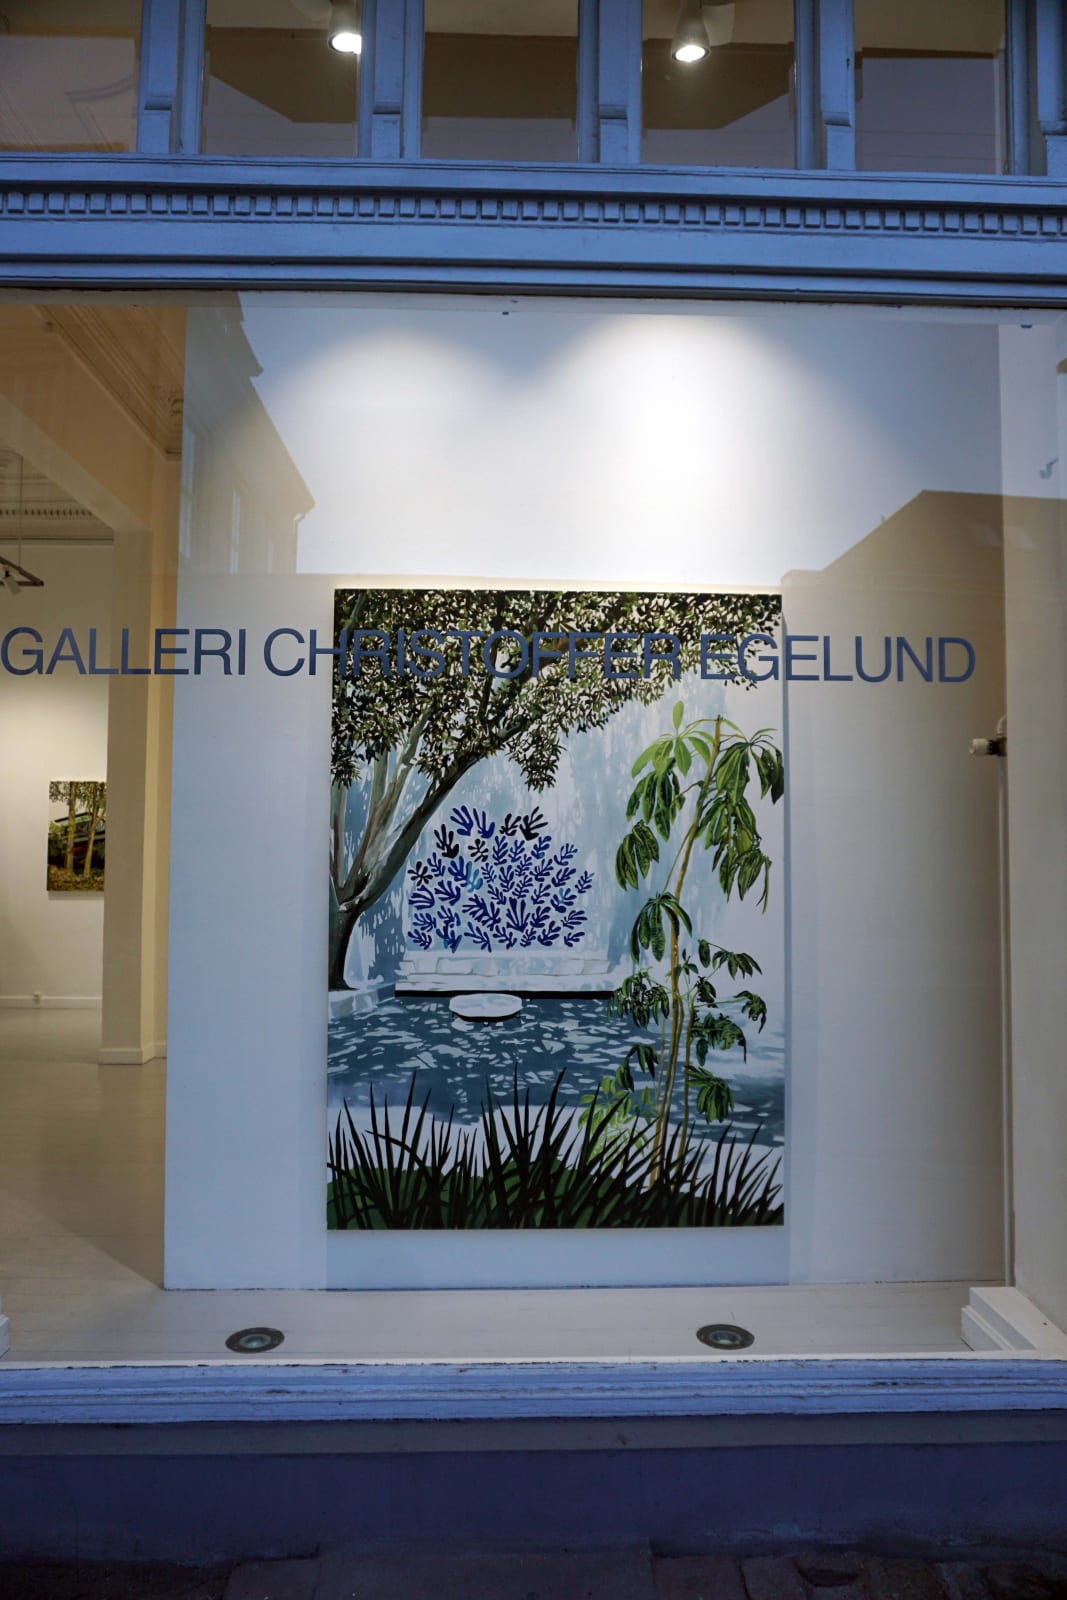 An Ideal Collection, Galleri Christoffer Egelund, 2019